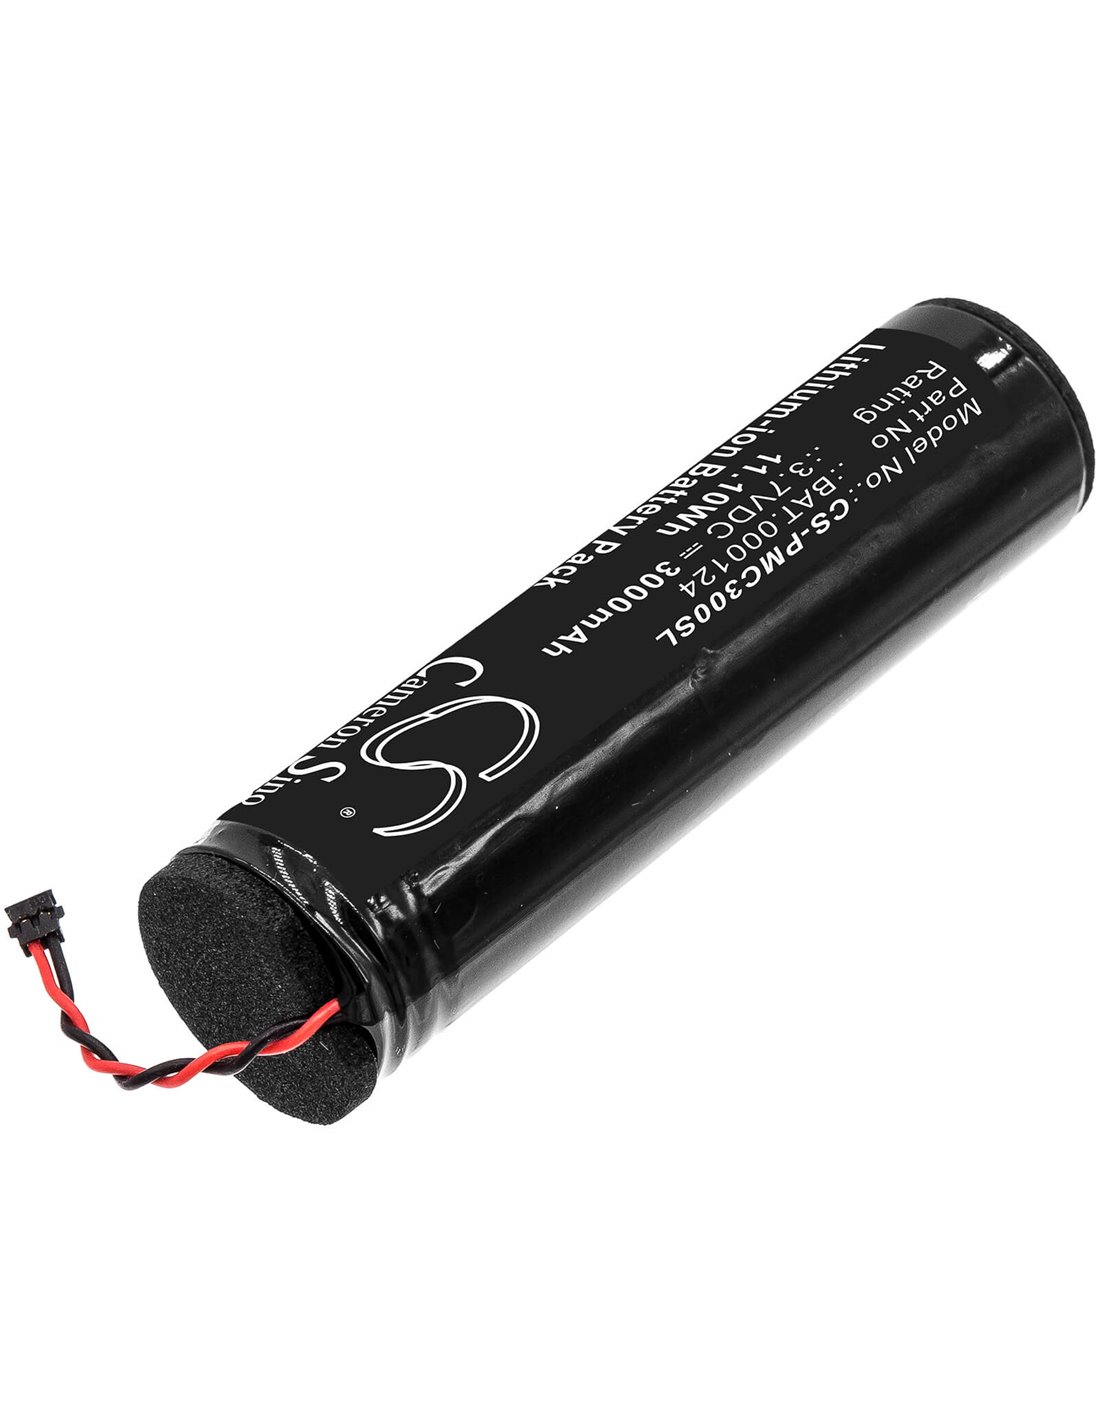 3.7V, 3000mAh, Li-ion Battery fits Philip Morris, Iqos 3.0 Charge Box, 11.10Wh